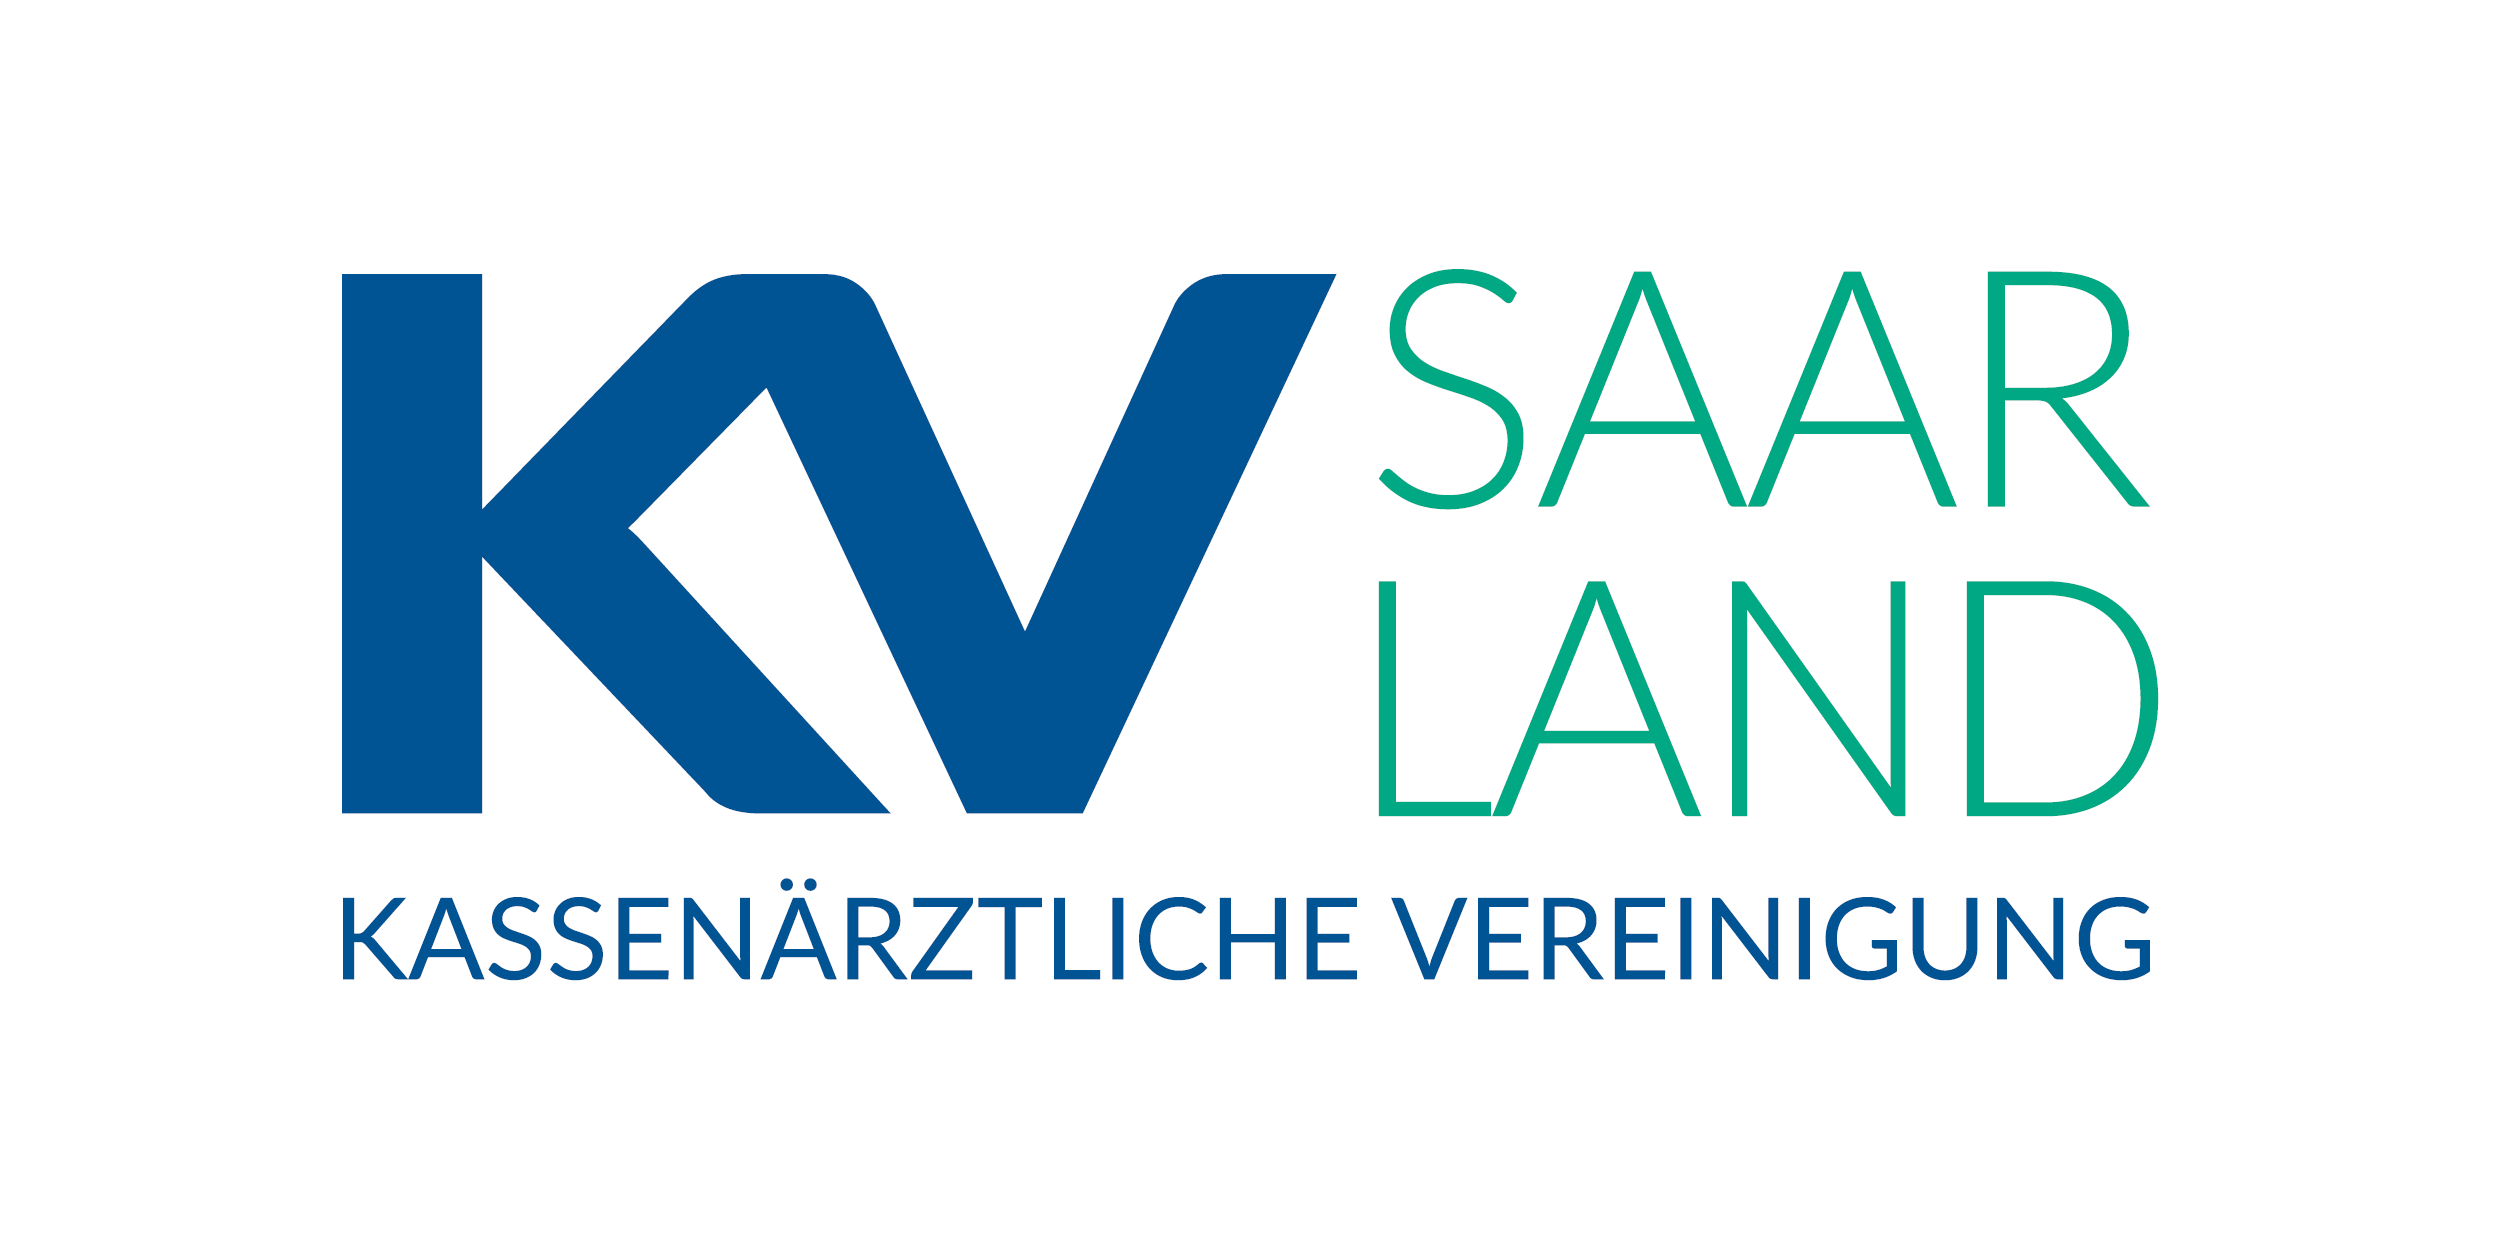 Das Bild zeigt das Logo der KV Saarland.